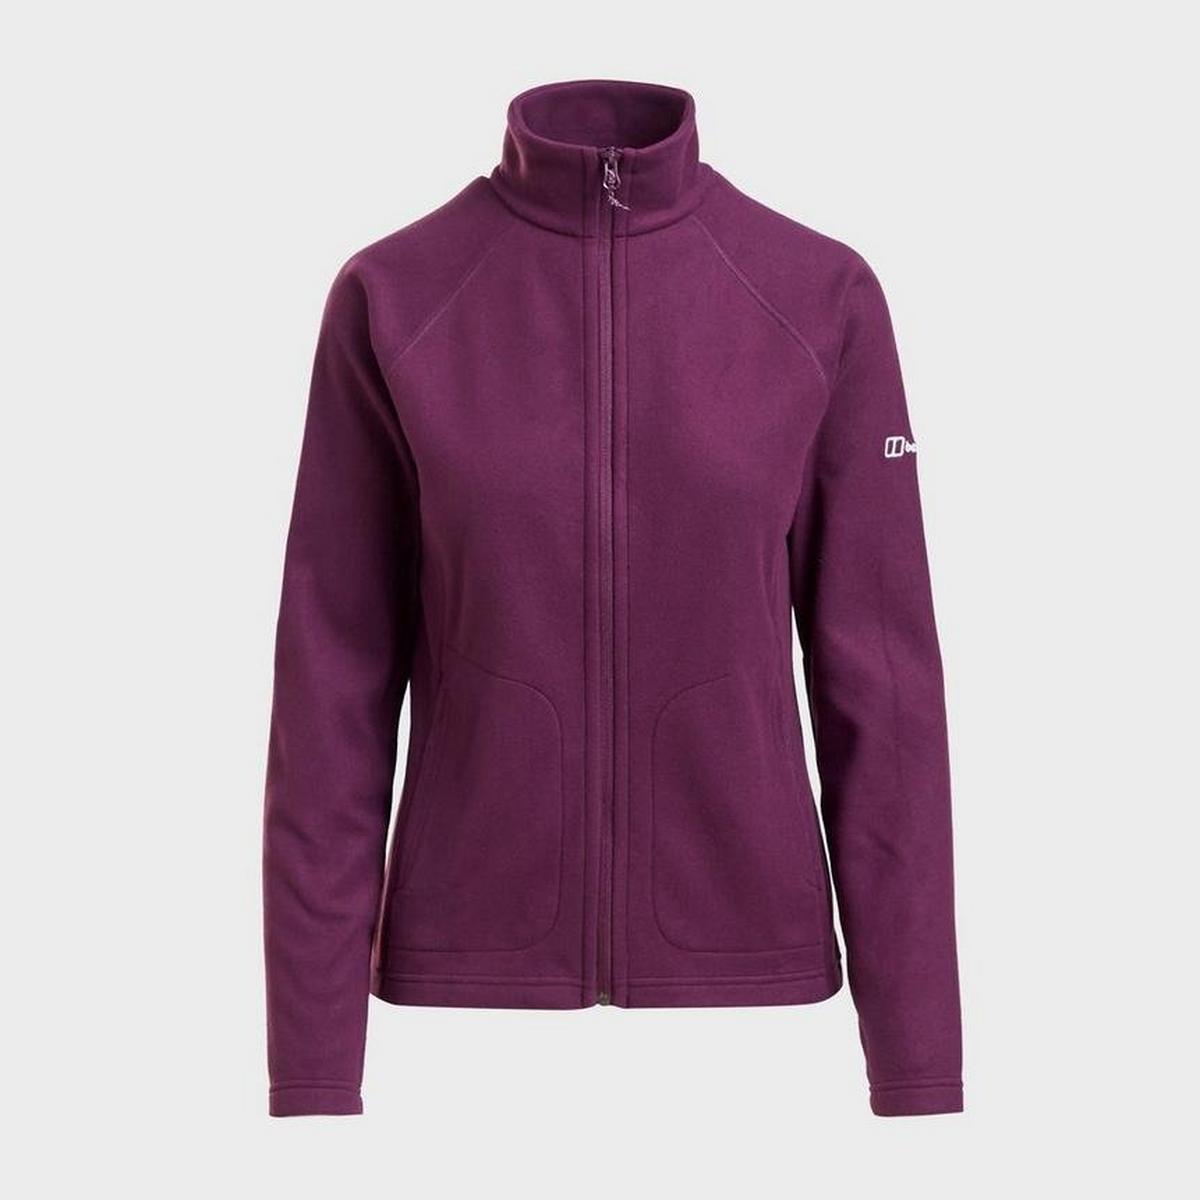 Berghaus Women's Hartsop Full-Zip Fleece - Purple